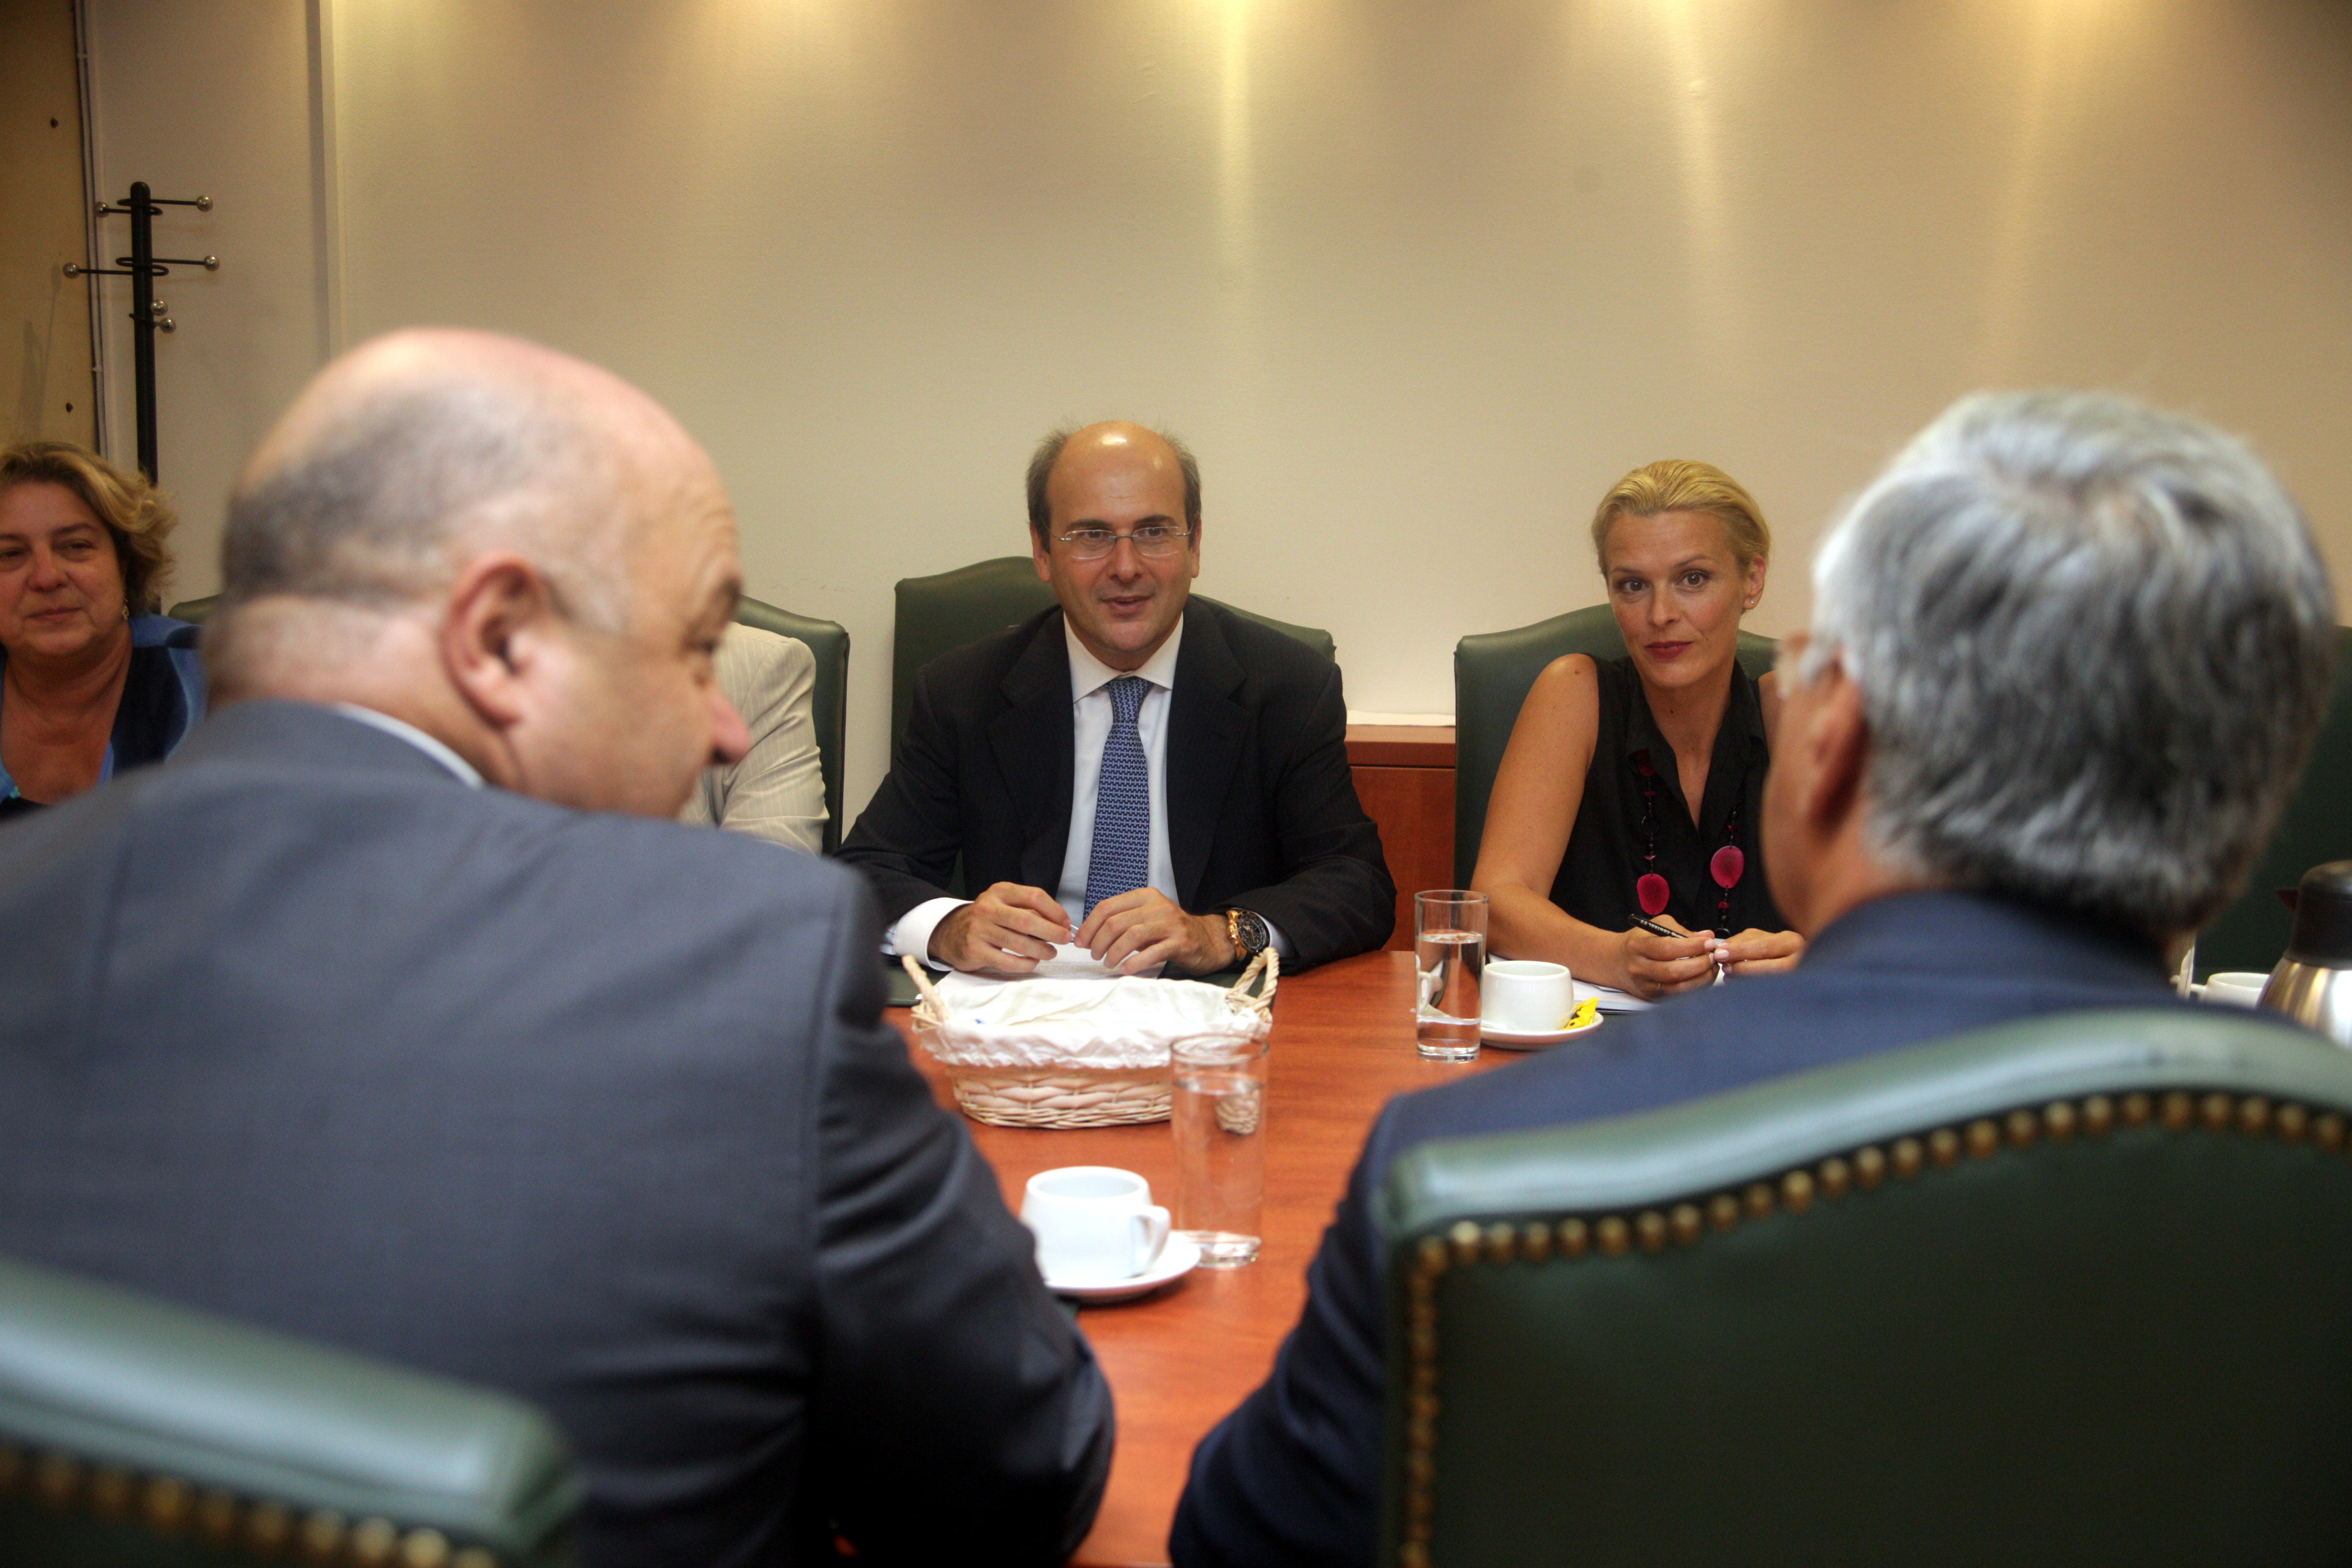 ΦΩΤΟ ΕUROKINISSI - Συνάντηση του υπουργού Κ. Χατζηδάκη με το ΔΣ της Ελληνικής Ενωσης Τραπεζών